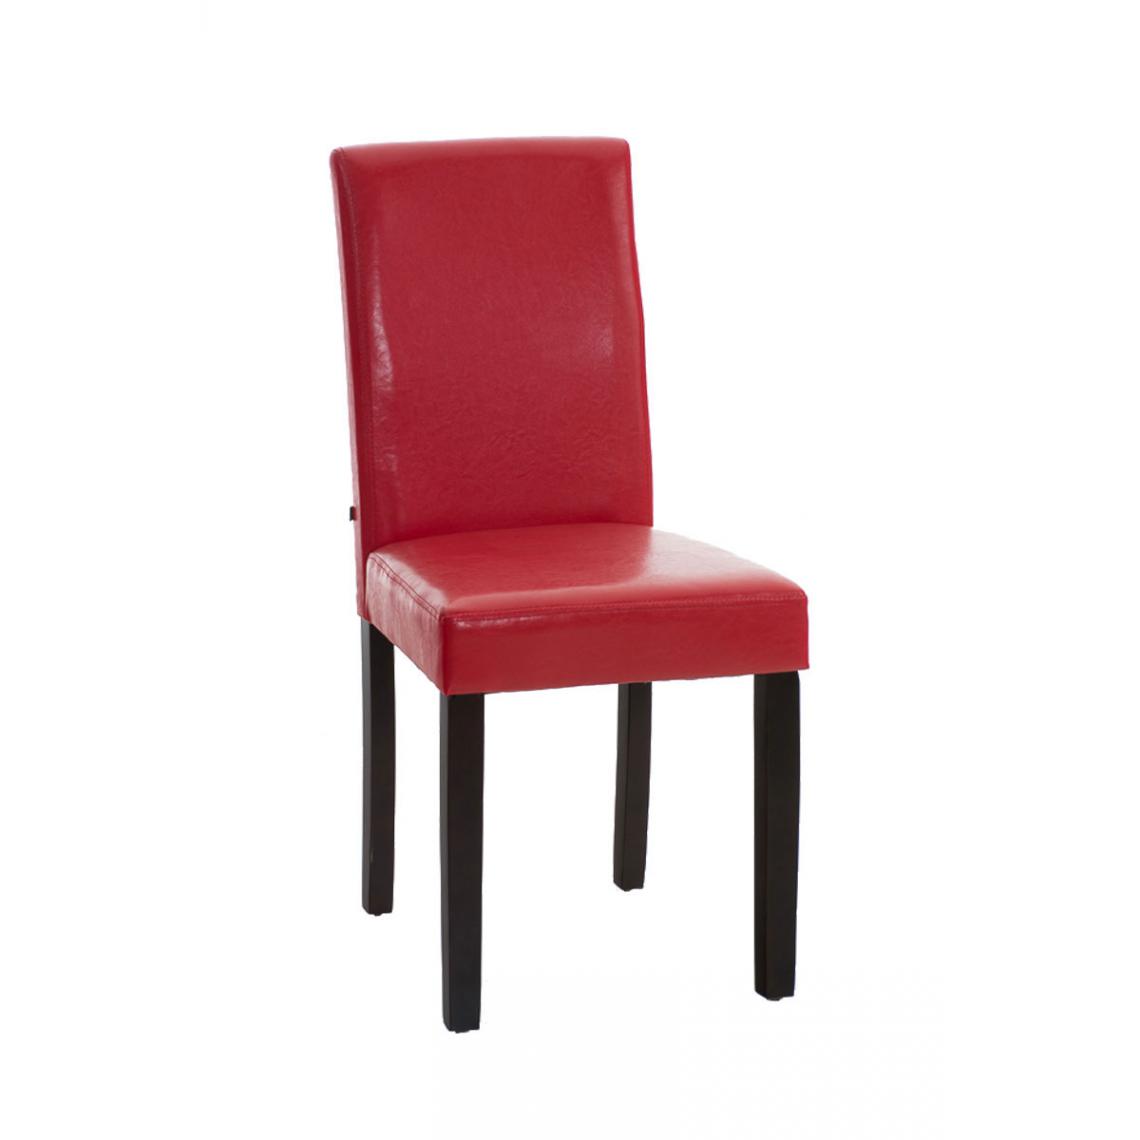 Icaverne - Magnifique Chaise de salle à manger reference Rabat marron foncé couleur rouge - Chaises